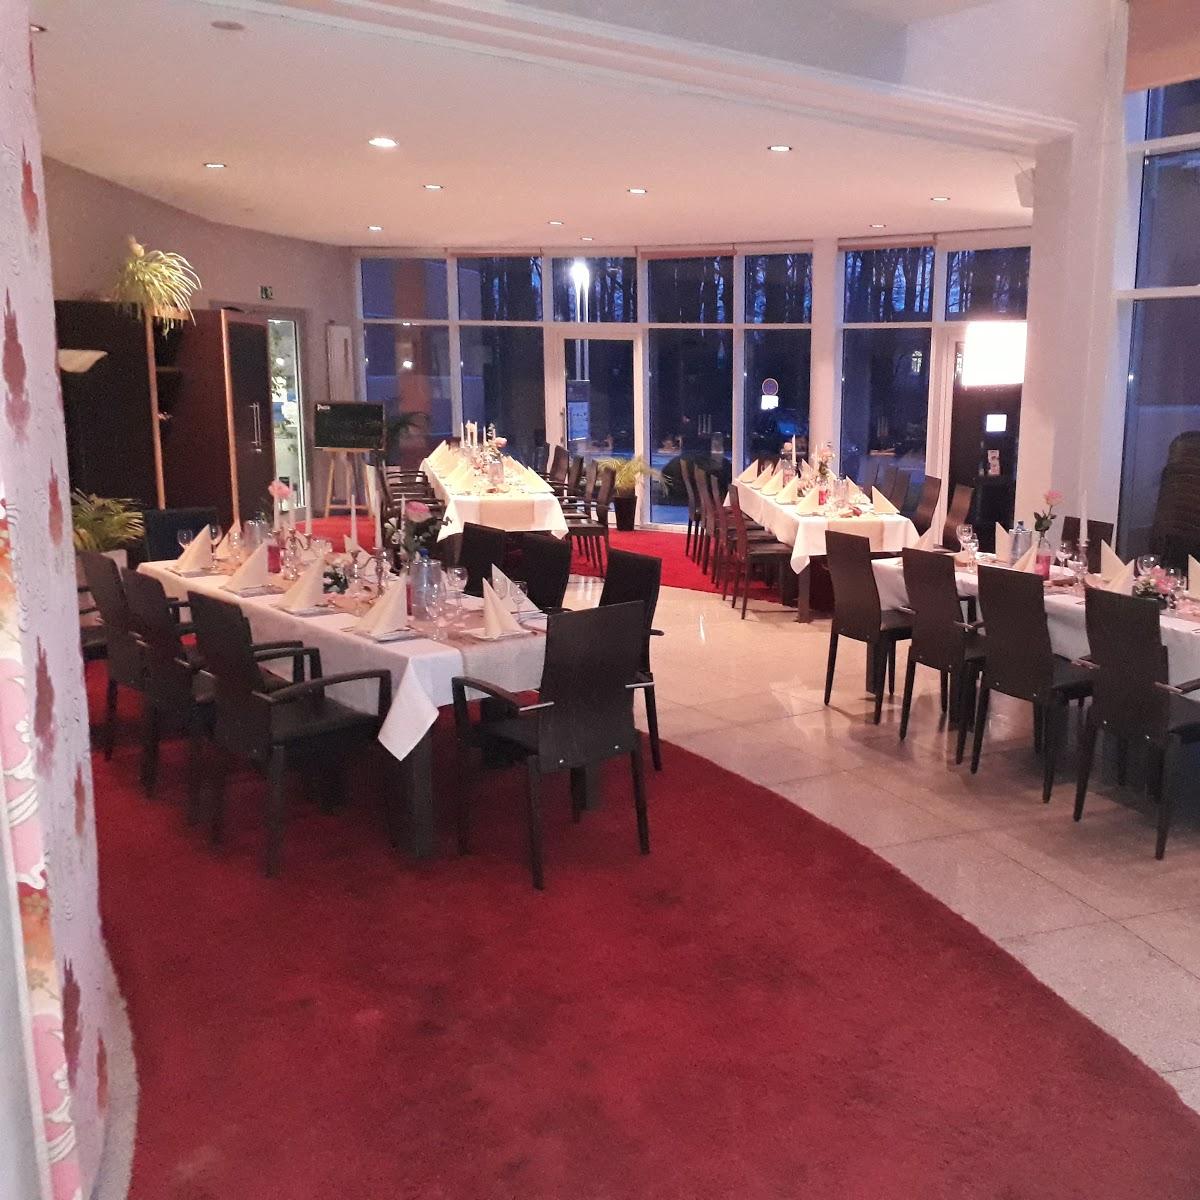 Restaurant "Park Lounge" in Versmold